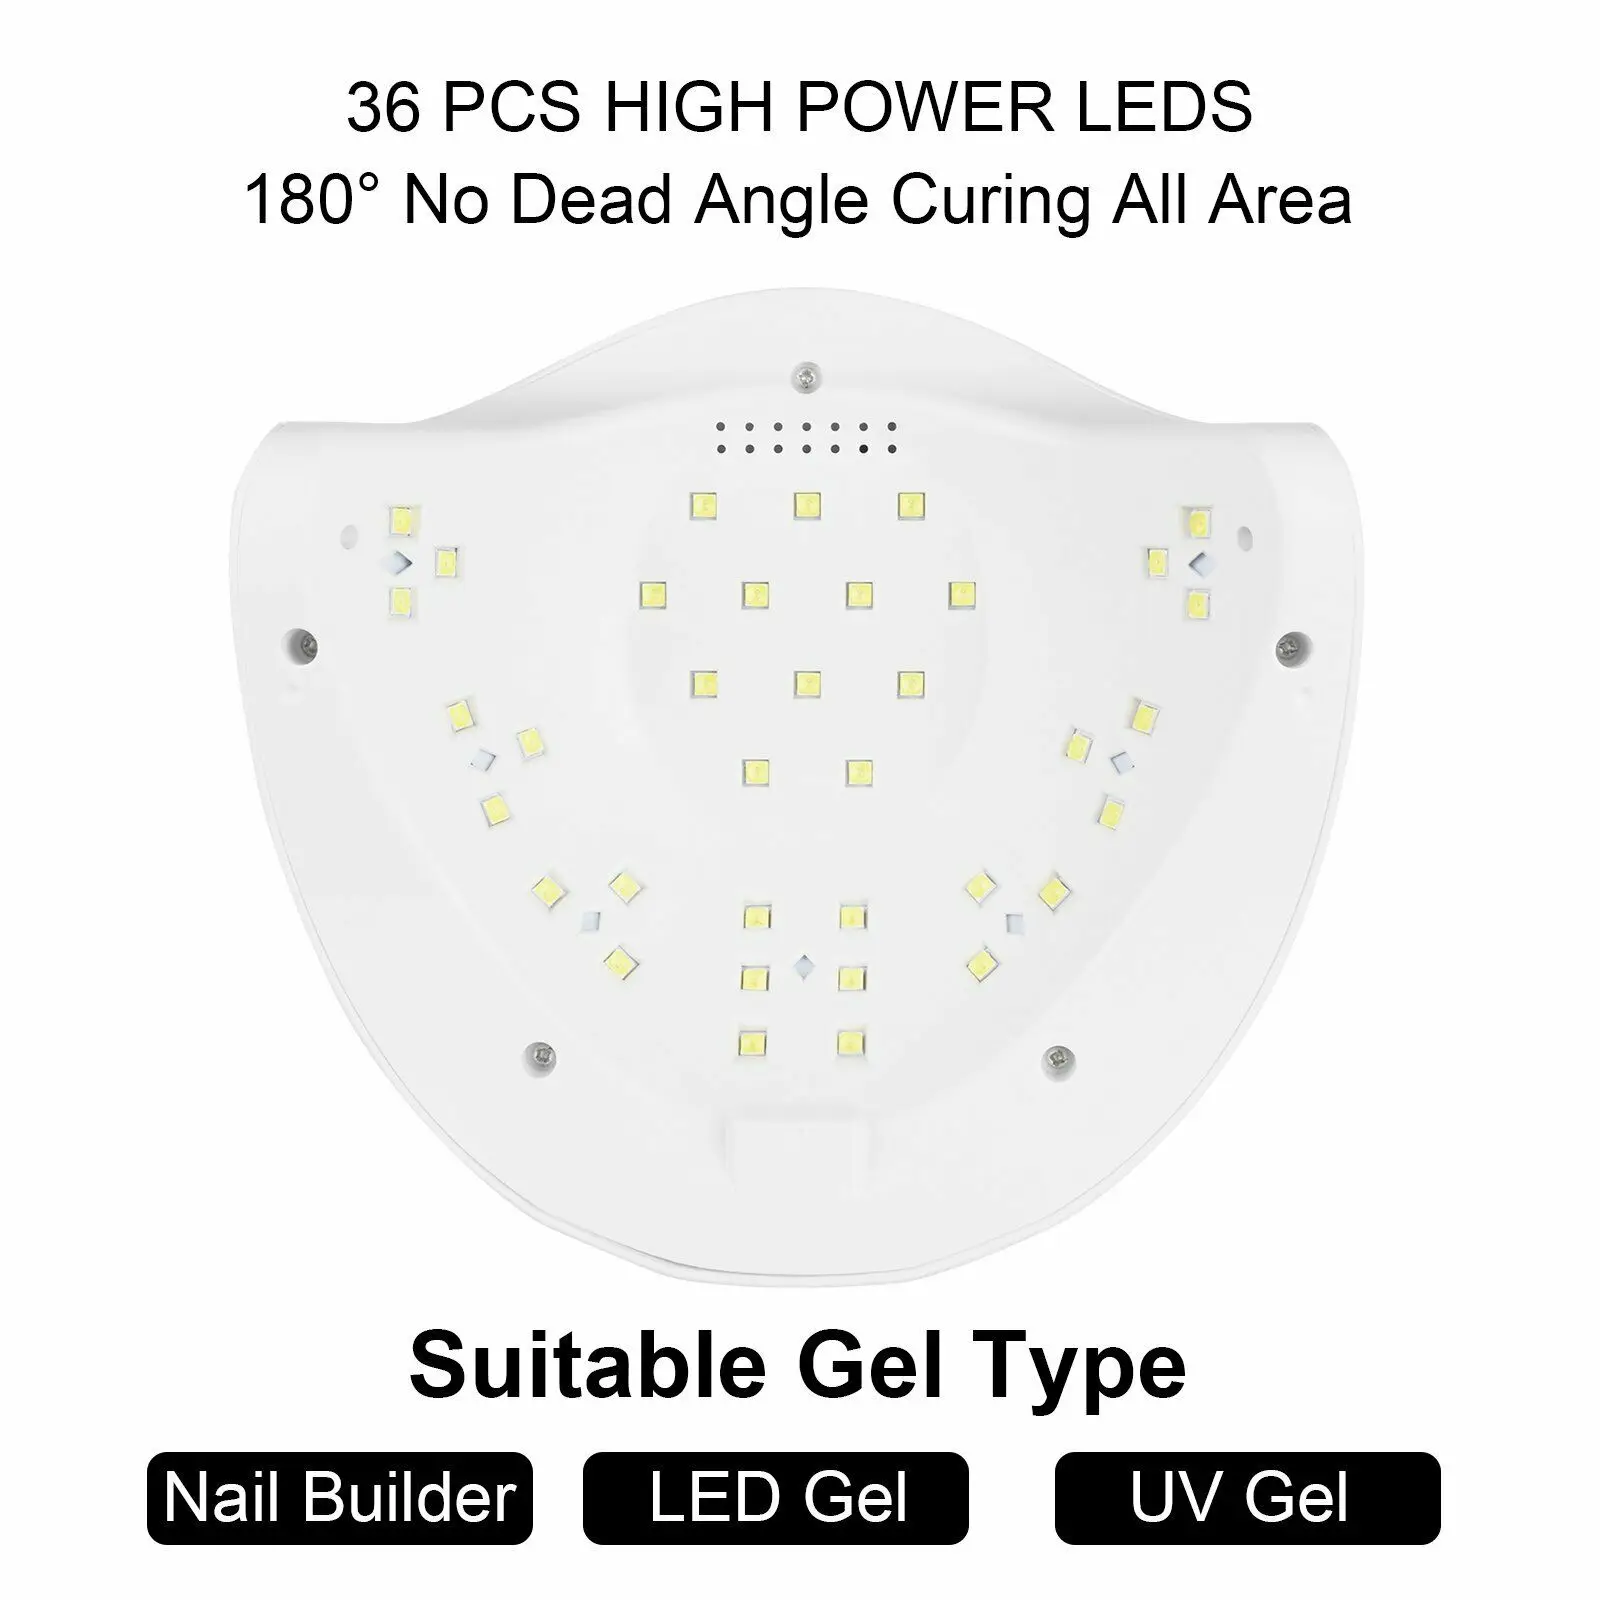 SUNX УФ светодиодный Сушилка для ногтей 54 Вт светодиодный на гвозде лампа, лампа для сушки гель-лака с нижней 30 s/60 s/90 s таймер ЖК-дисплей